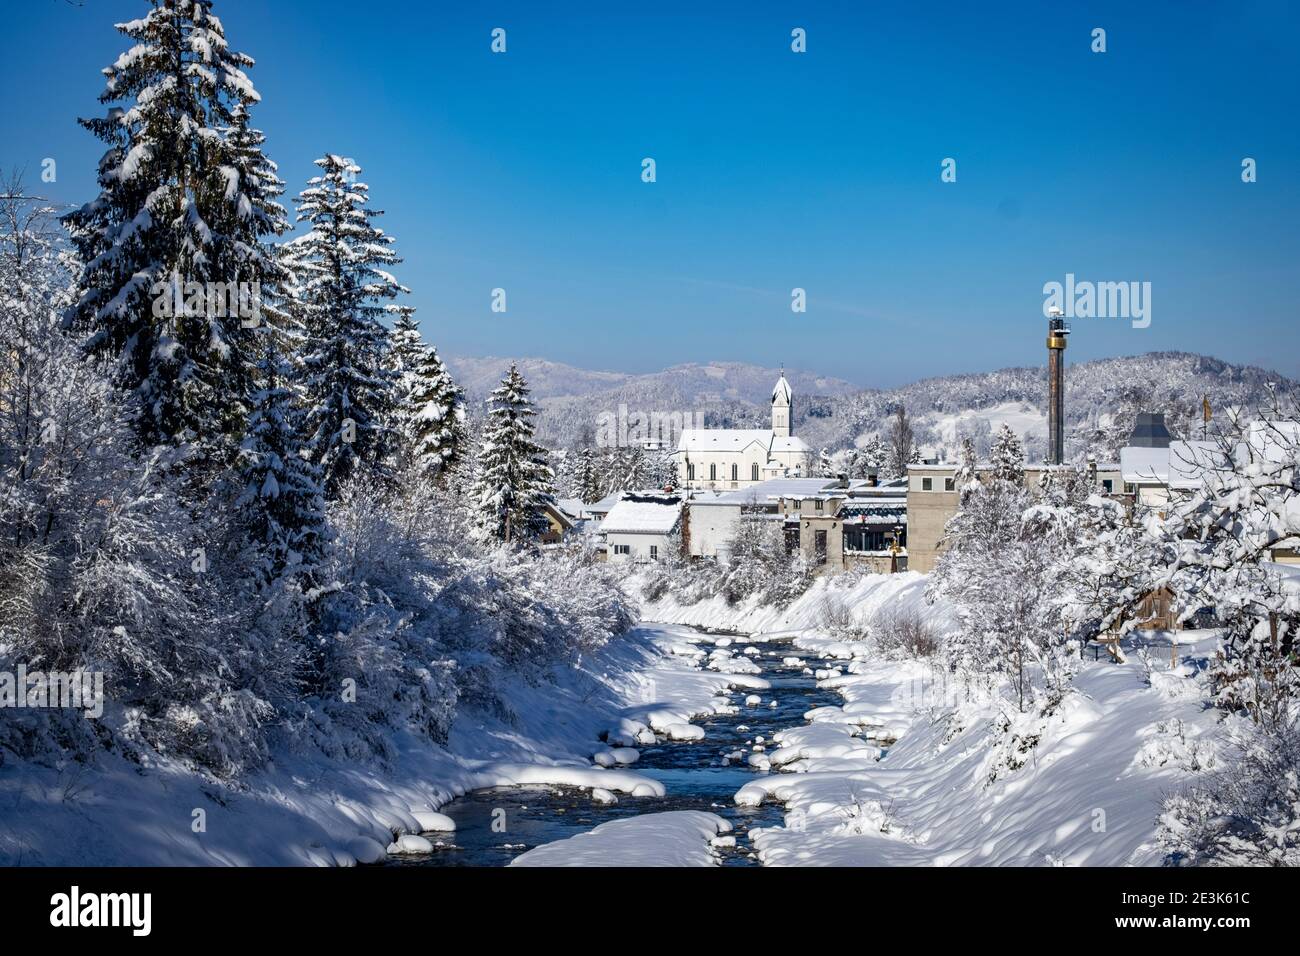 View to Muntlix in winter wonderland in Rankweil Stock Photo